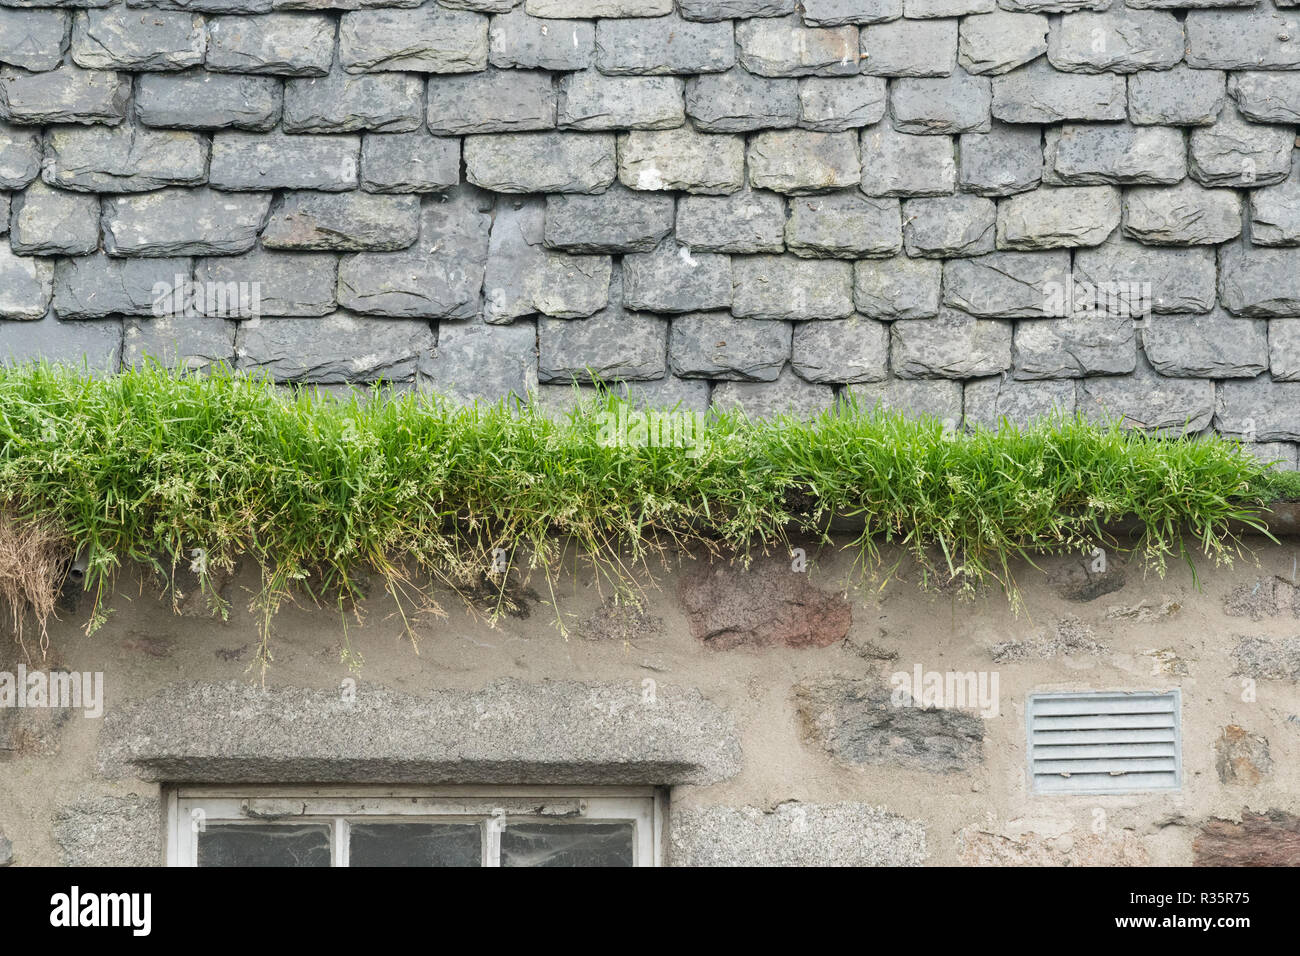 Gras wachsen in der Regenrinne aufgrund mangelnder Wartung - Schottland, Großbritannien Stockfoto